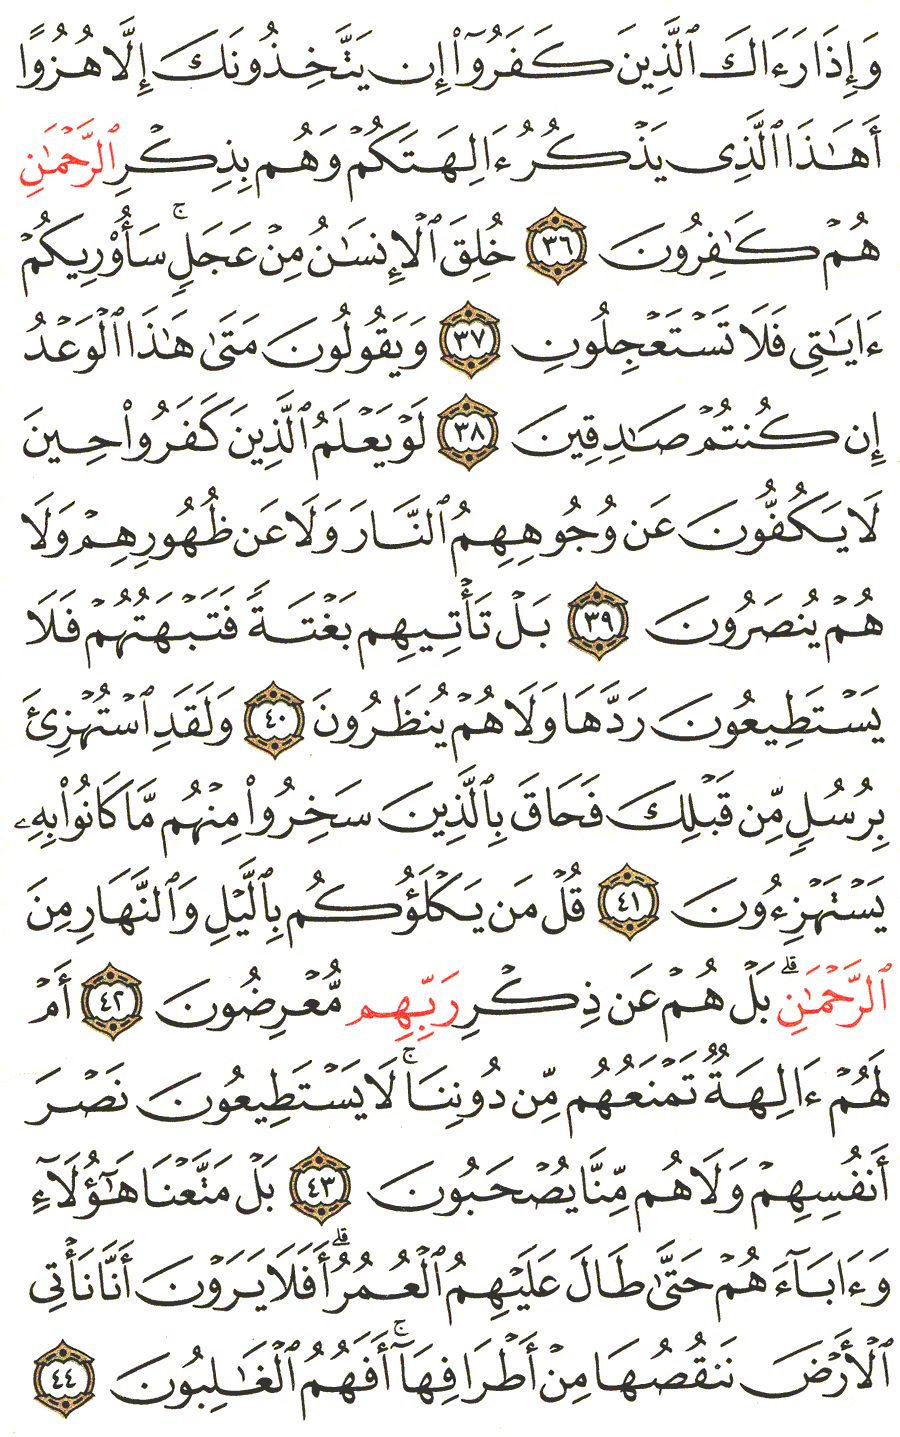 الصفحة رقم 325  من القرآن الكريم مكتوبة من المصحف